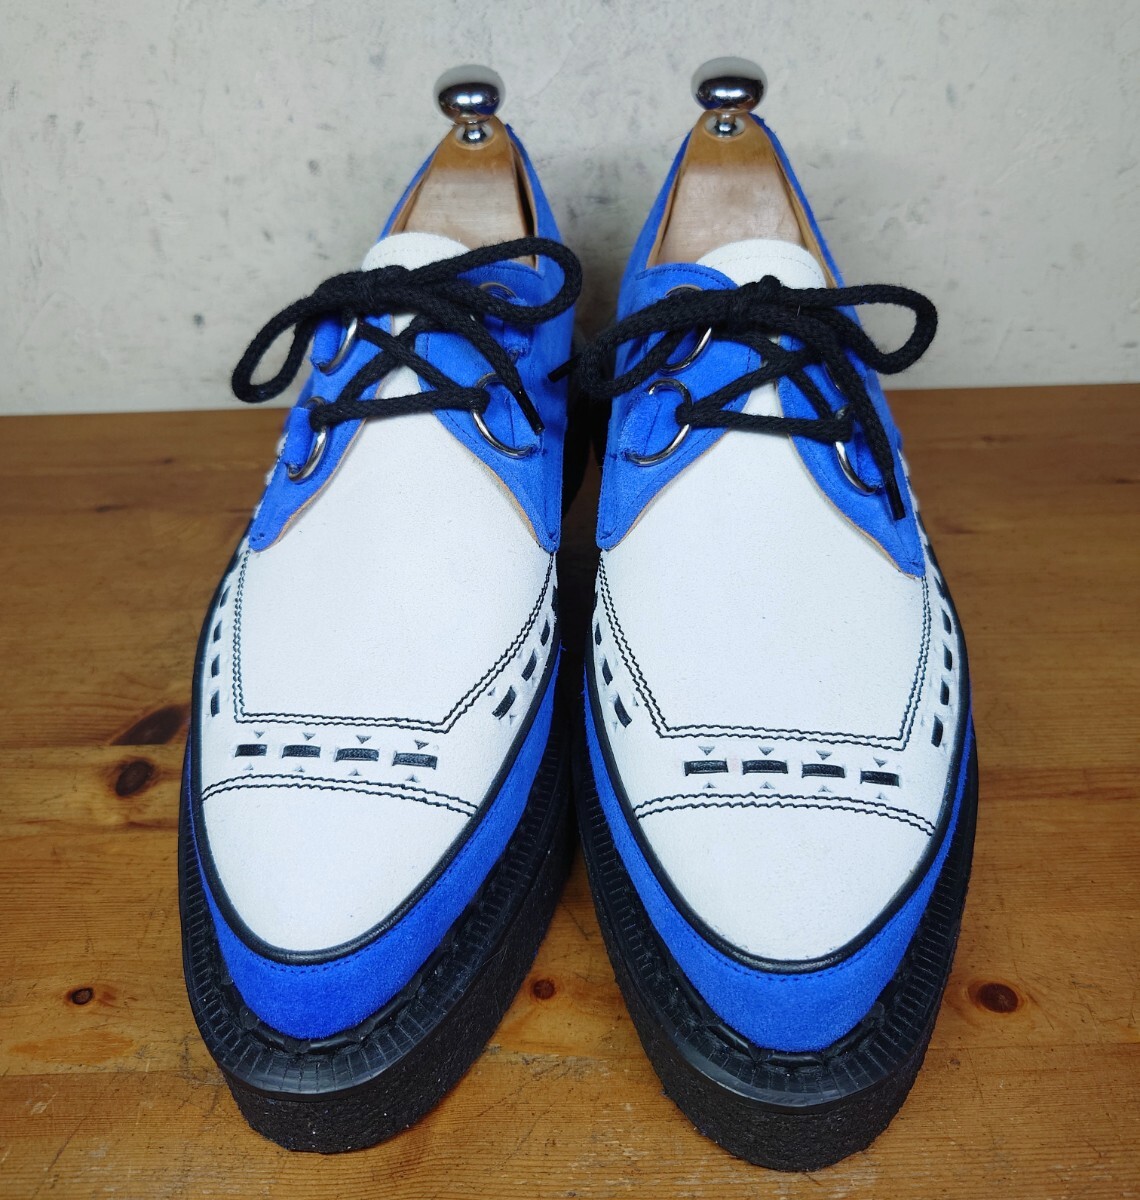 [.. надеть обувь только / бесплатная доставка ] Британия производства GEORGECOX/ George Cox тонн канава Gibson Raver подошва UK9 27.5cm соответствующий голубой белый /robot 666